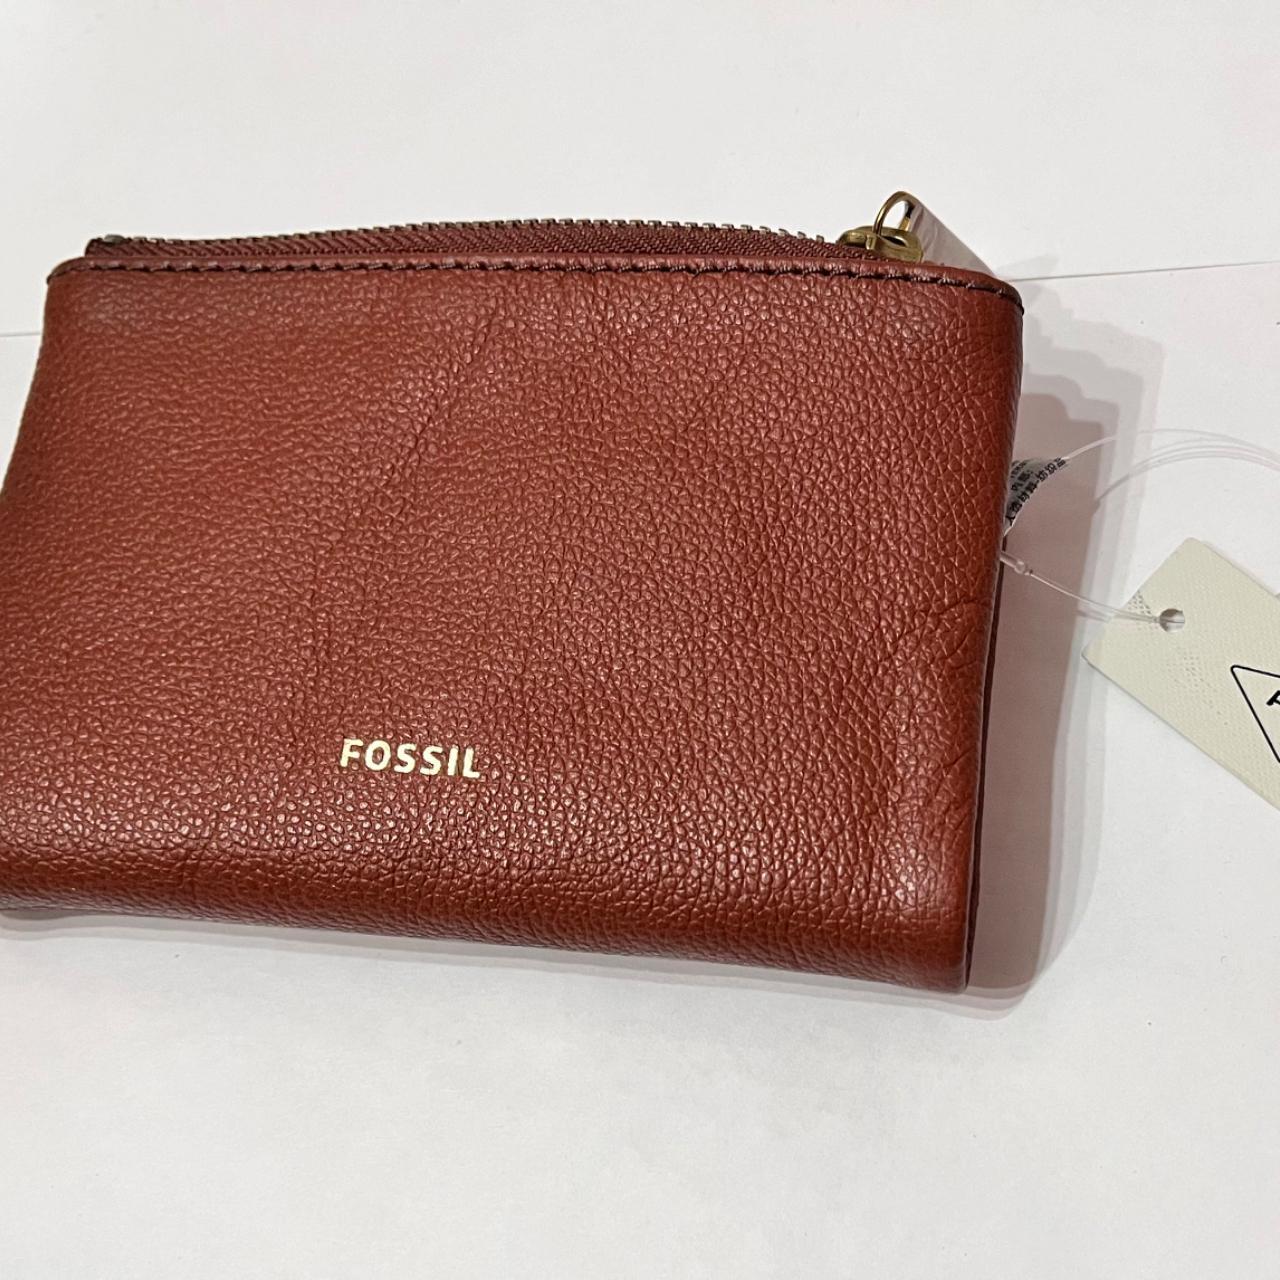 FOSSIL Brown Camel Leather Satchel Purse Handbag Dawson Wallet Organizer  Set | eBay